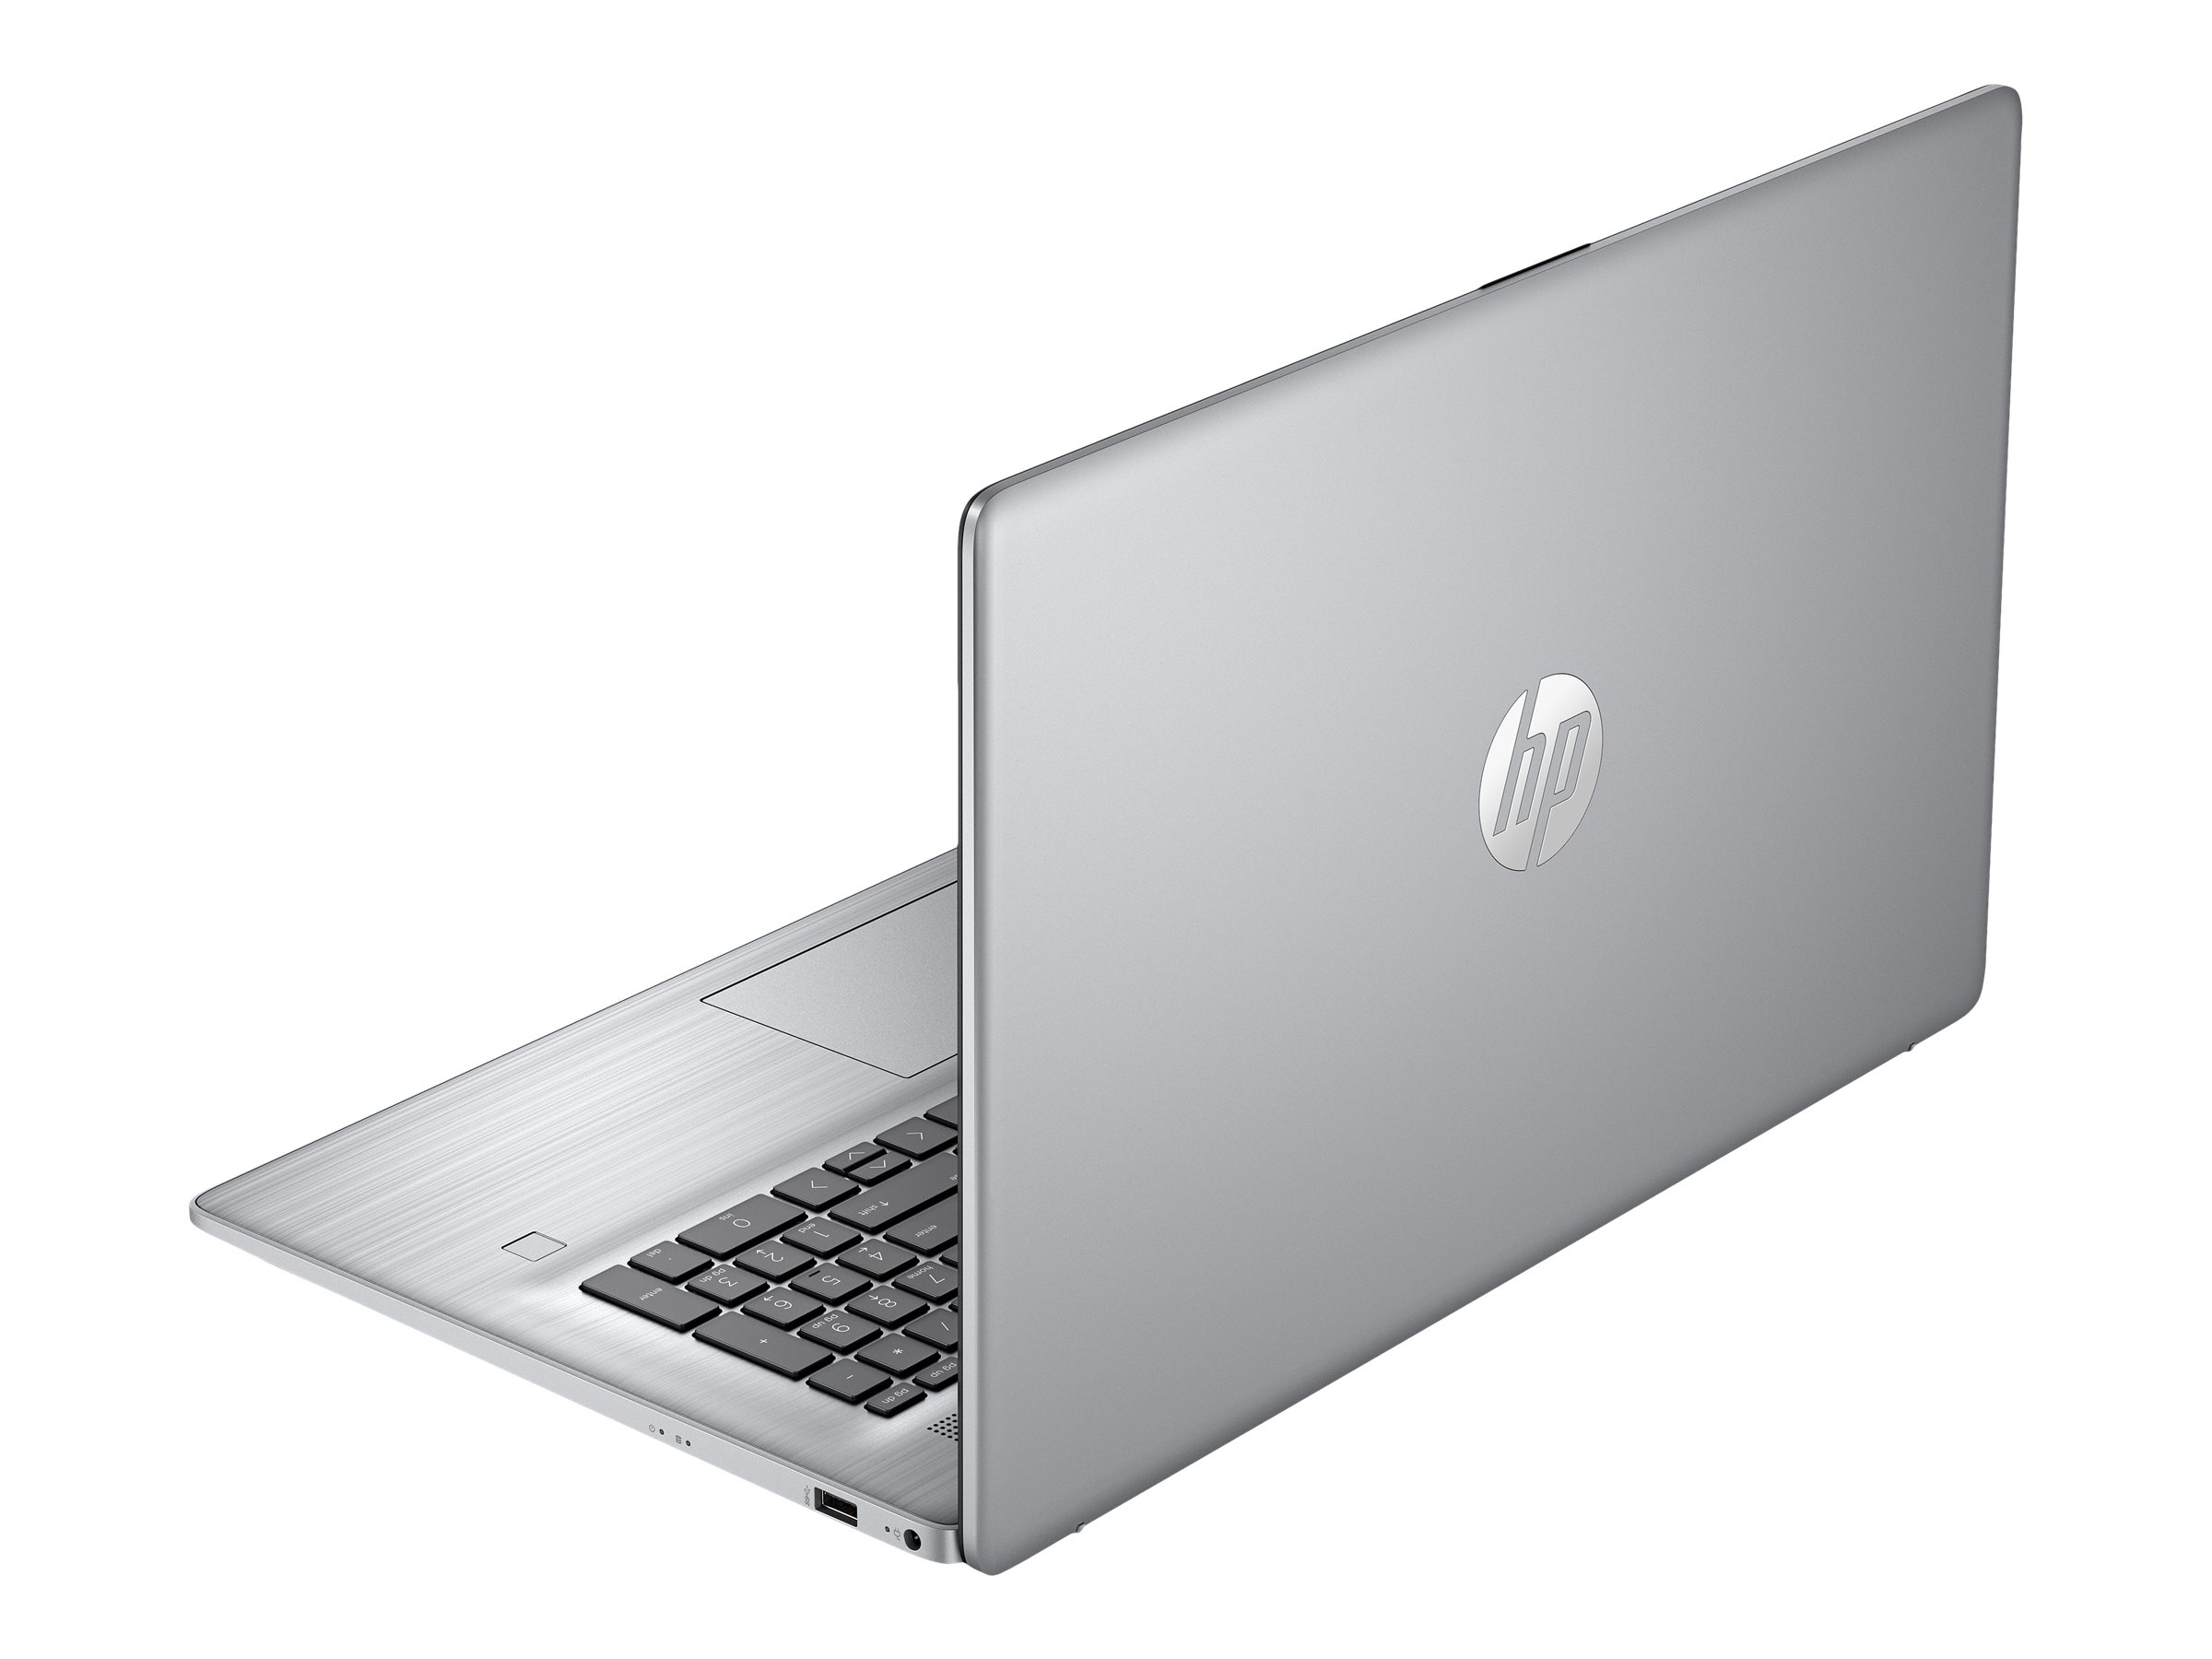 Super prix pour ce PC portable HP boosté par une puce AMD Ryzen 7